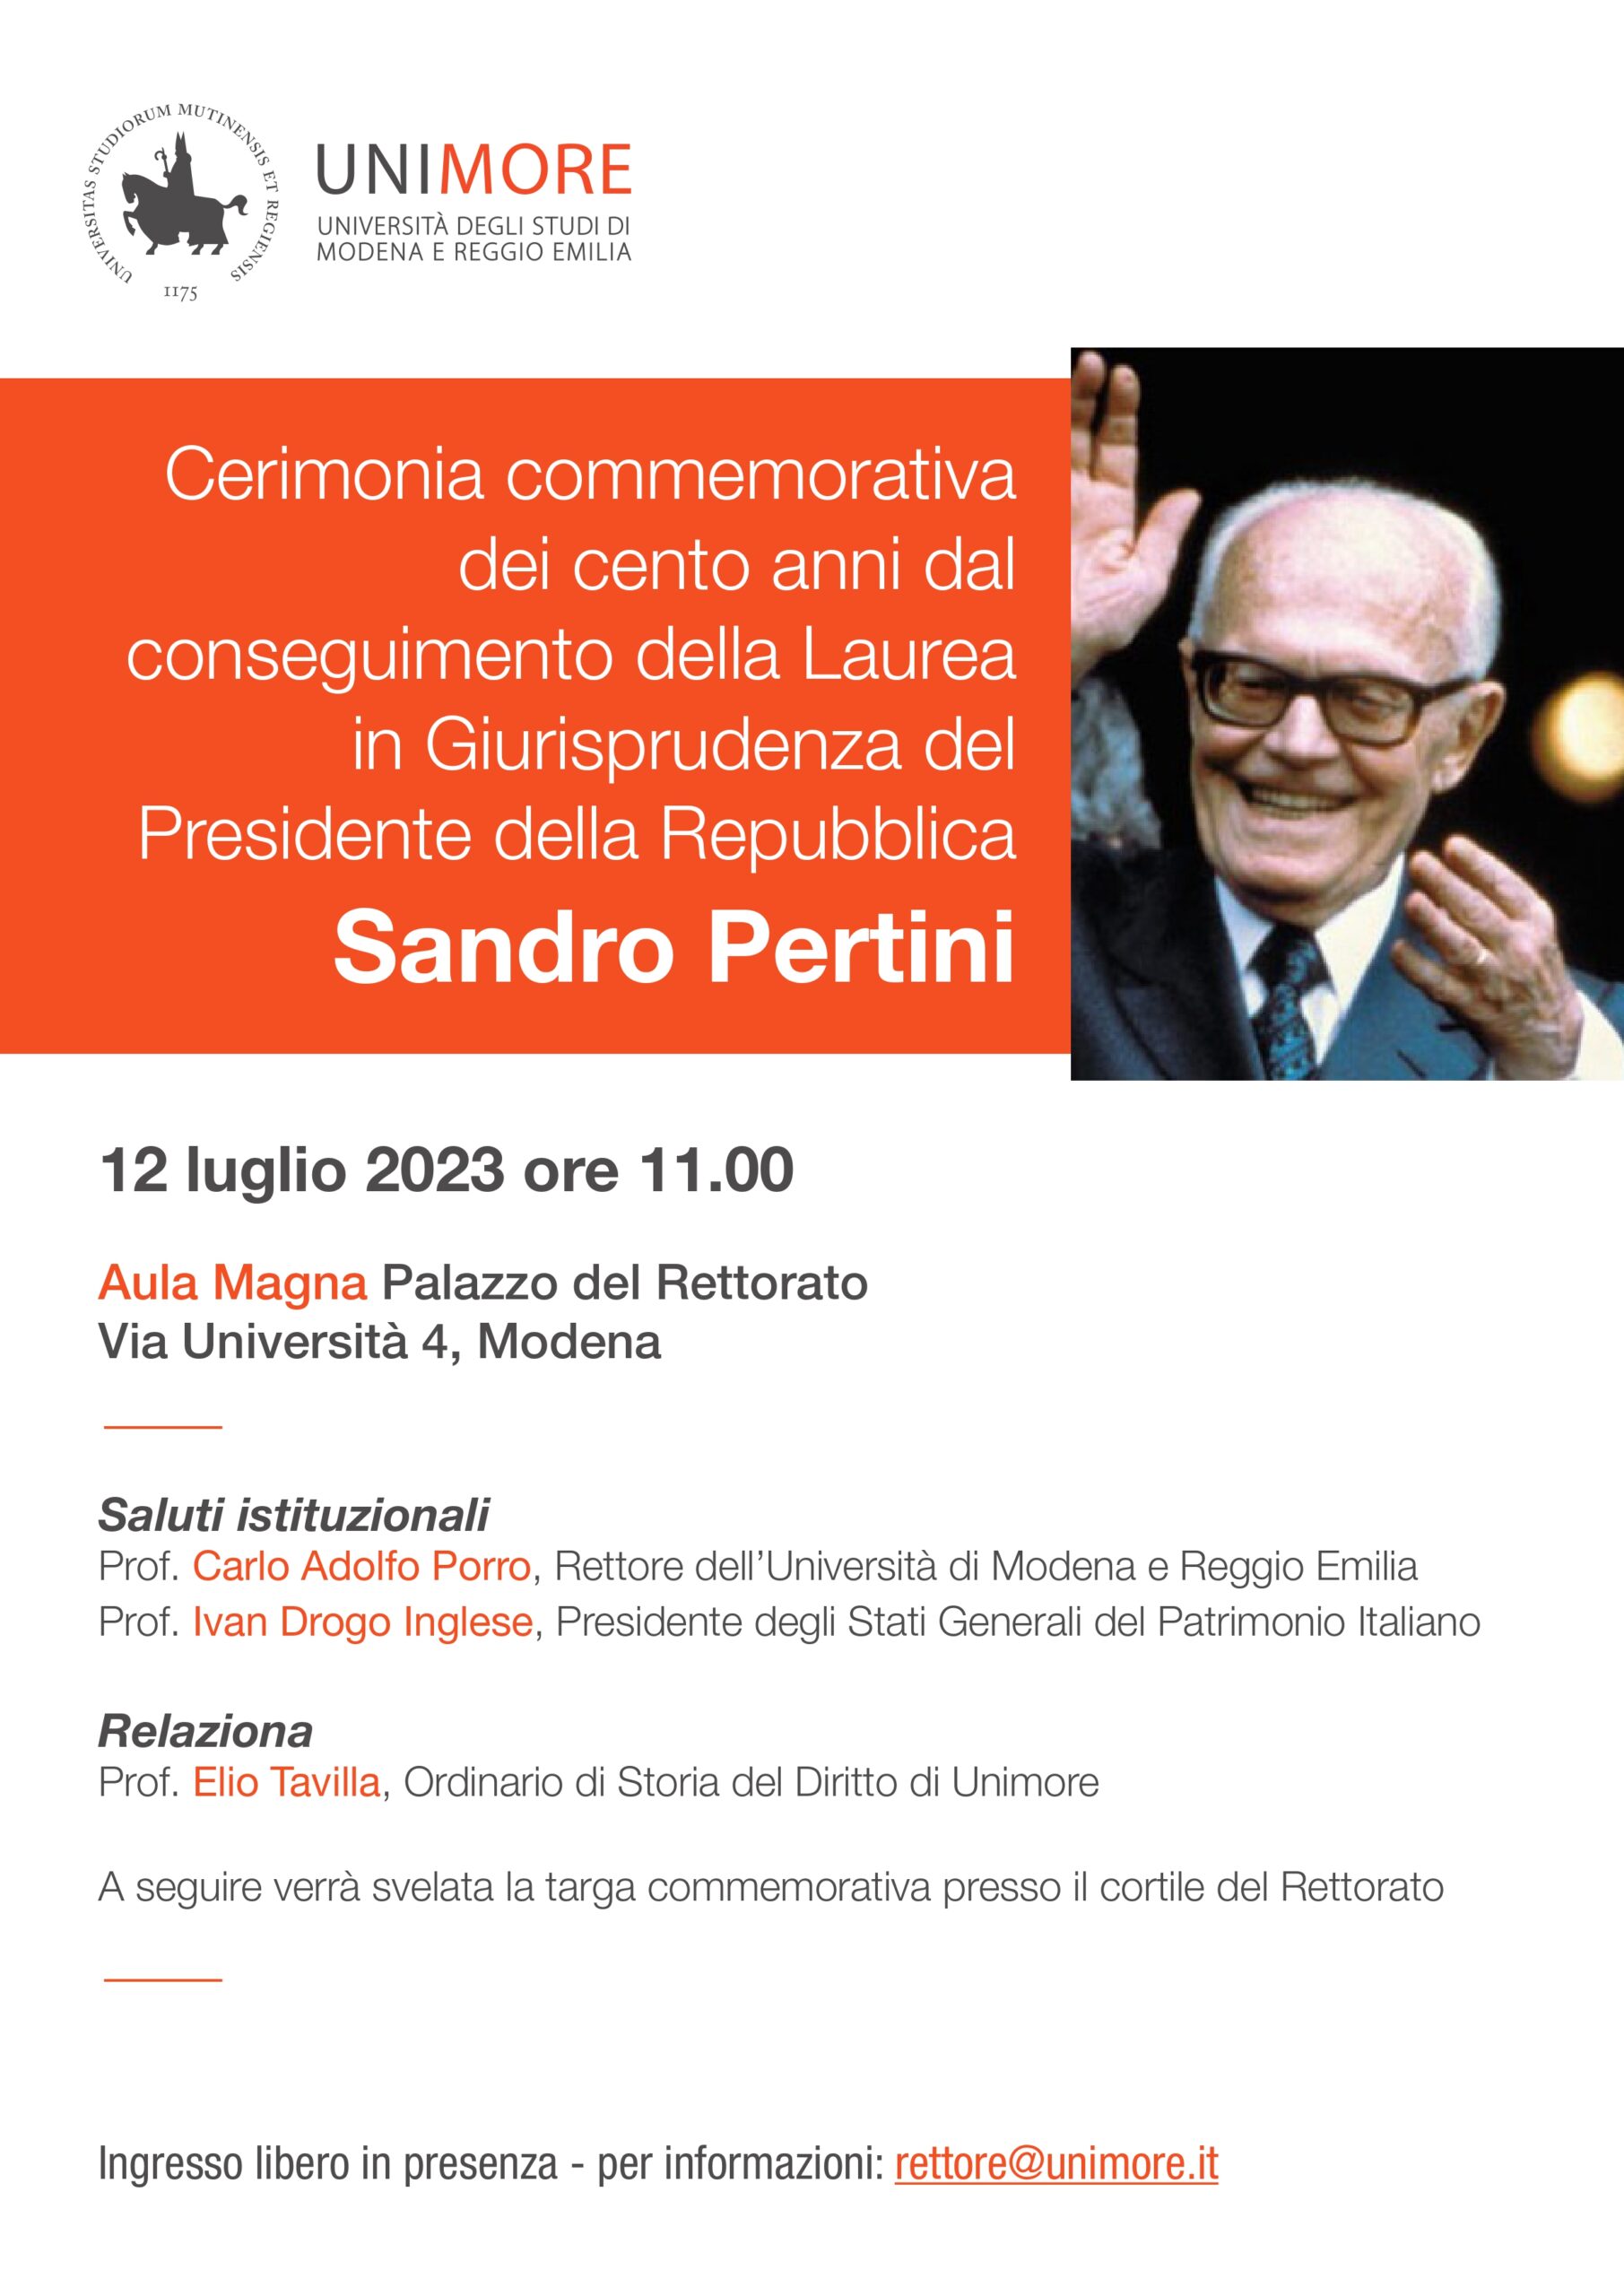  Unimore festeggia i 100 dalla laurea di Sandro Pertini